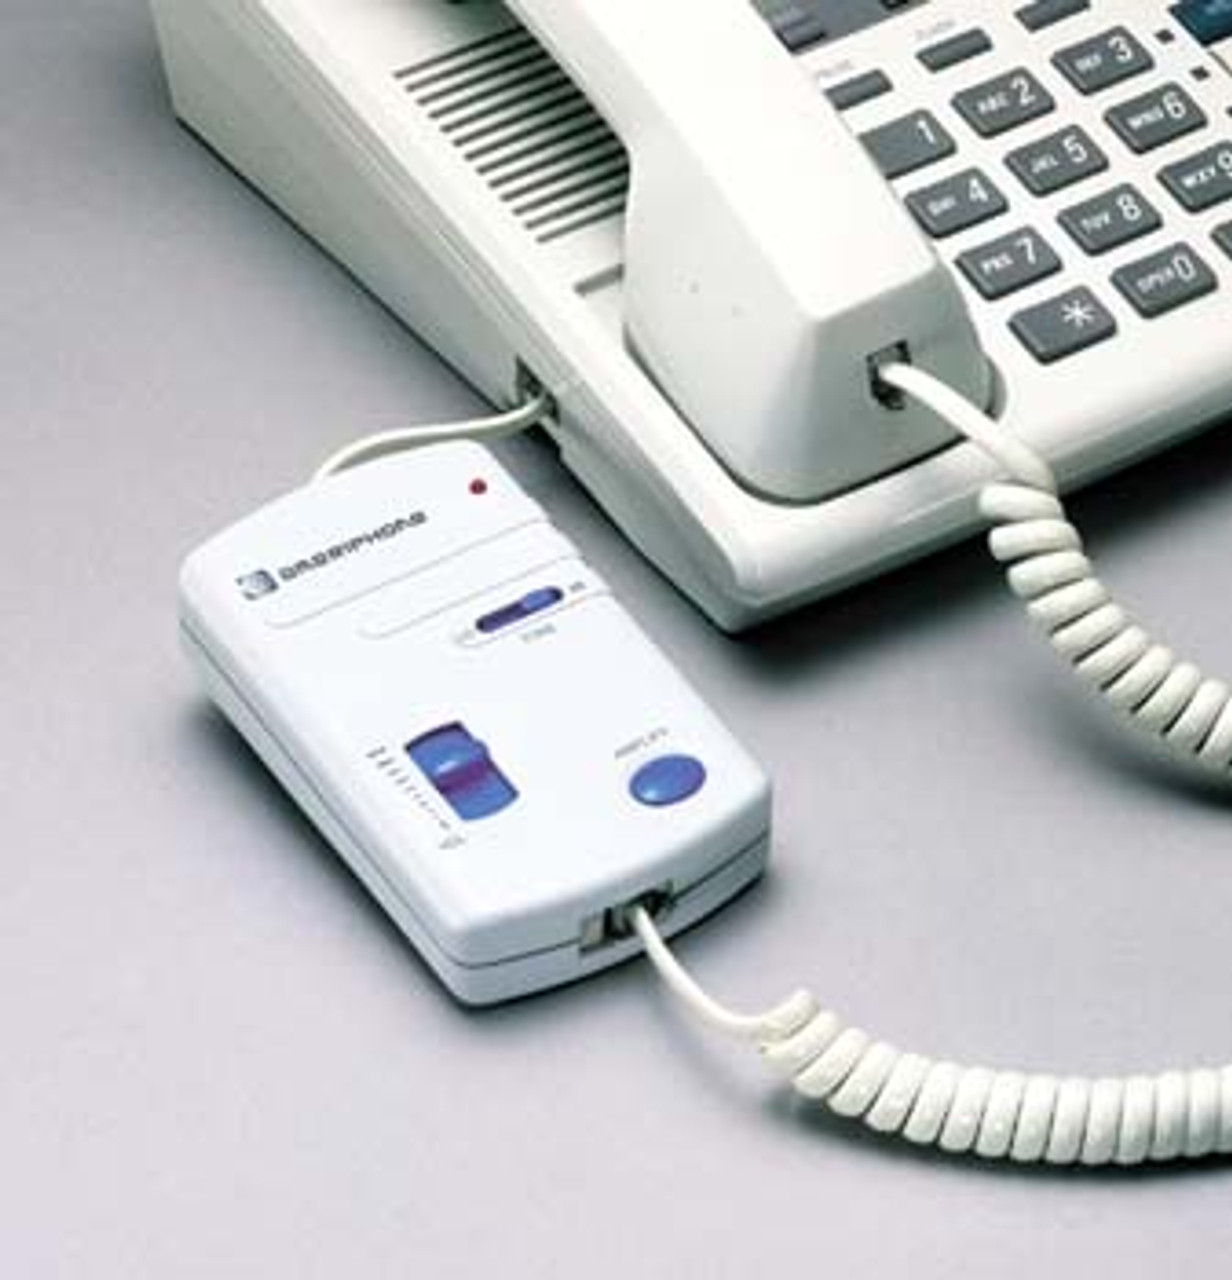 Amplificateur de ligne téléphonique Clarity HA-40 - Boutique CCA